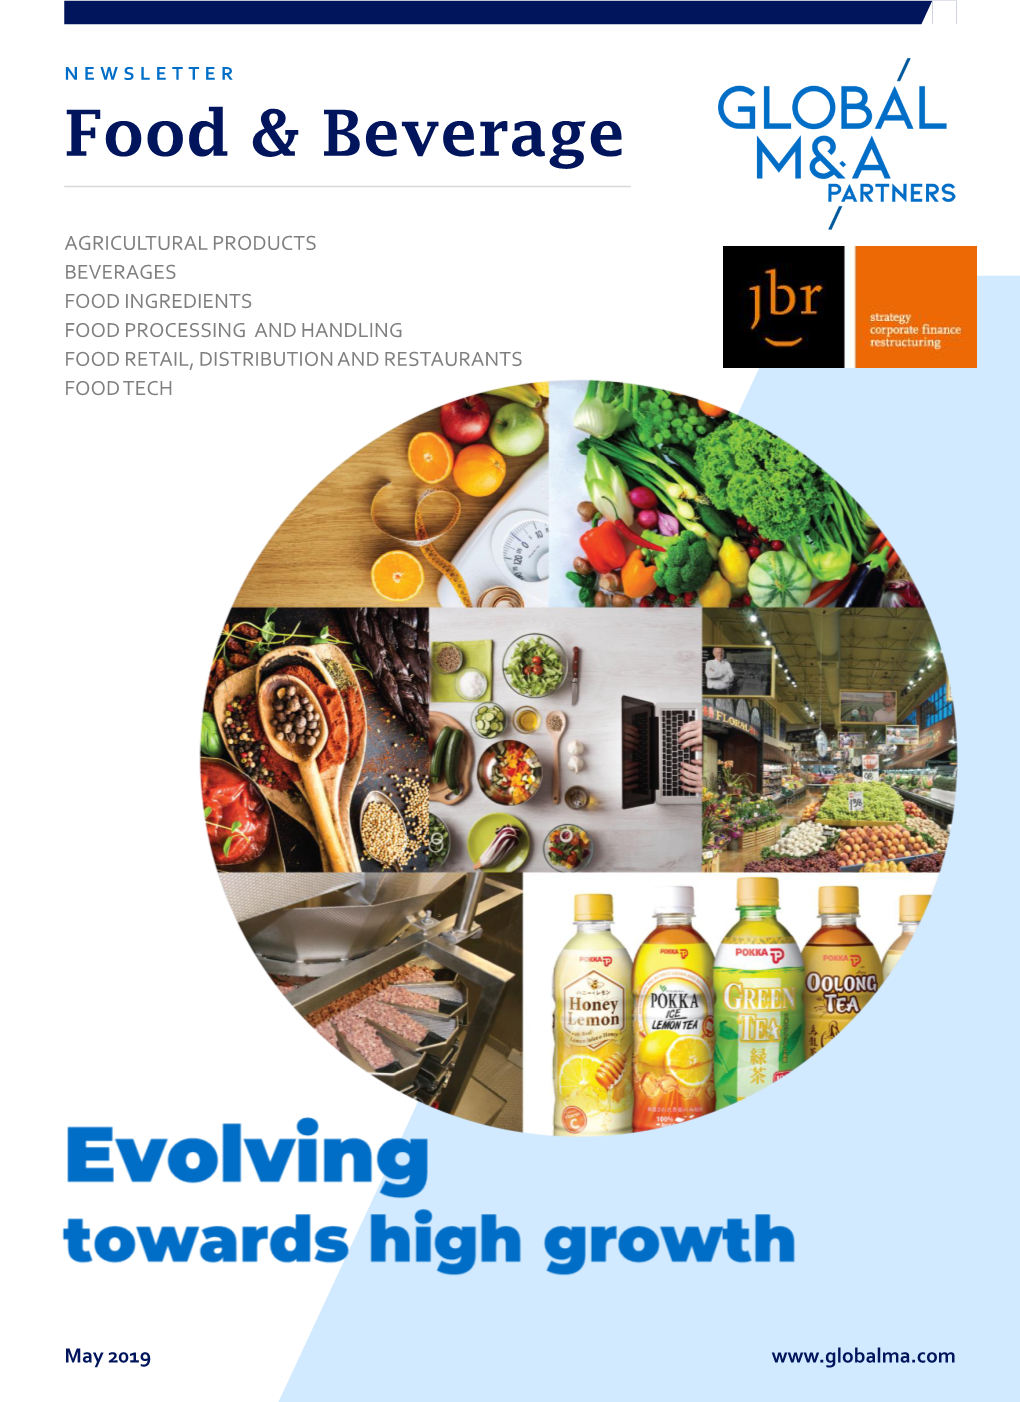 JBR-Food-Beverage-Newsletter-Evolving-Towards-High-Growth.Pdf